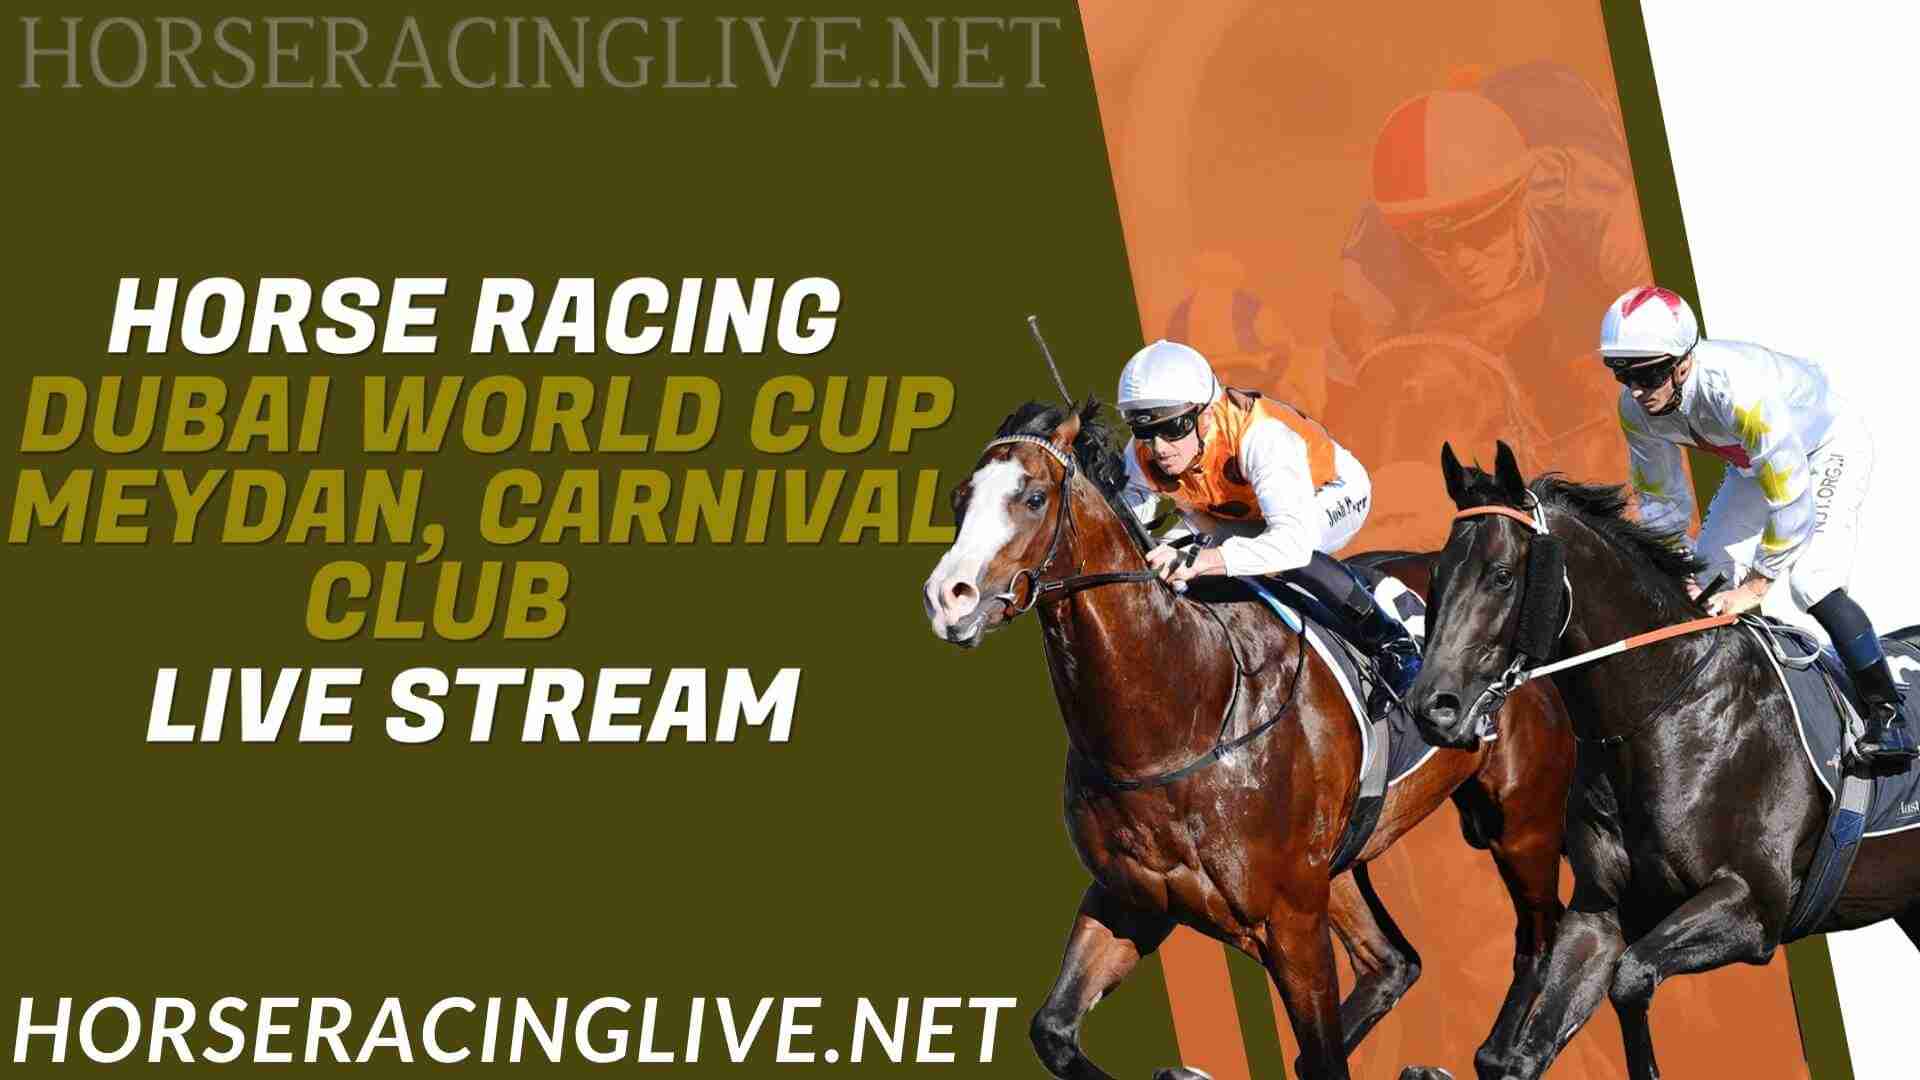 Dubai Horse Racing Live Stream